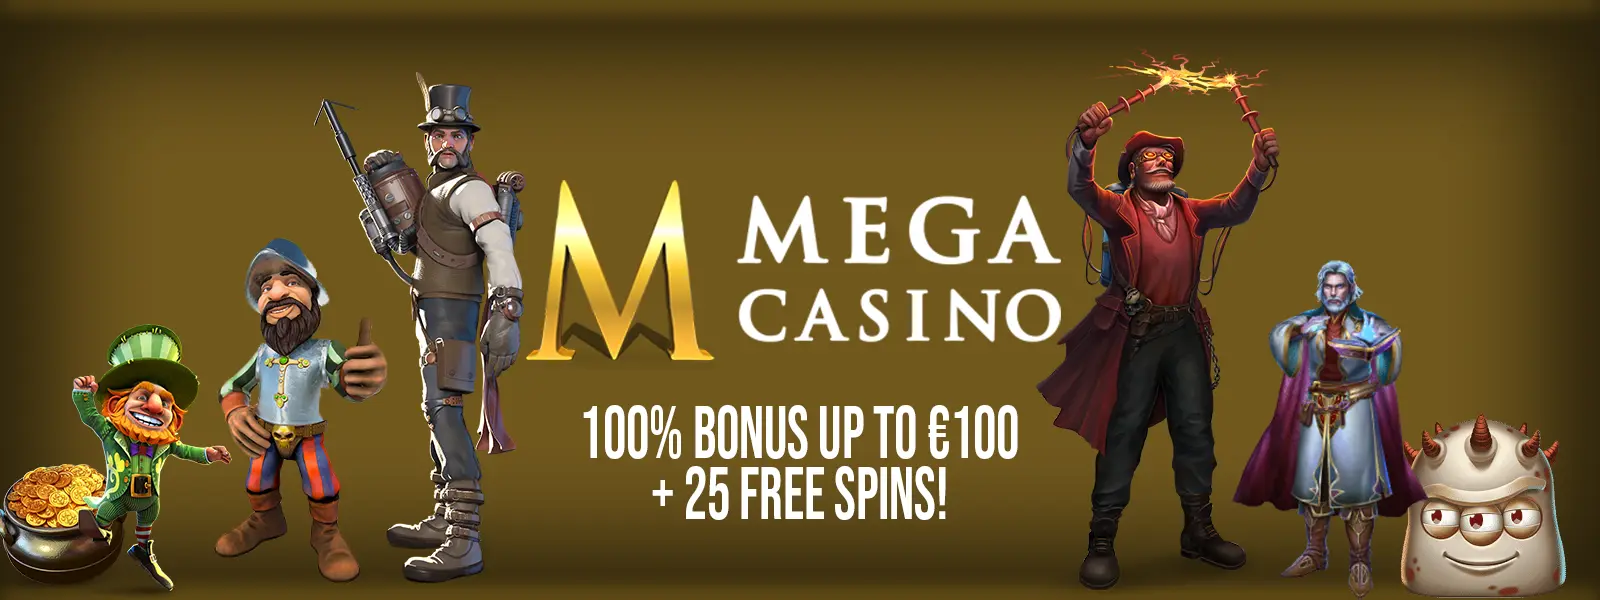 Mega Casino Header